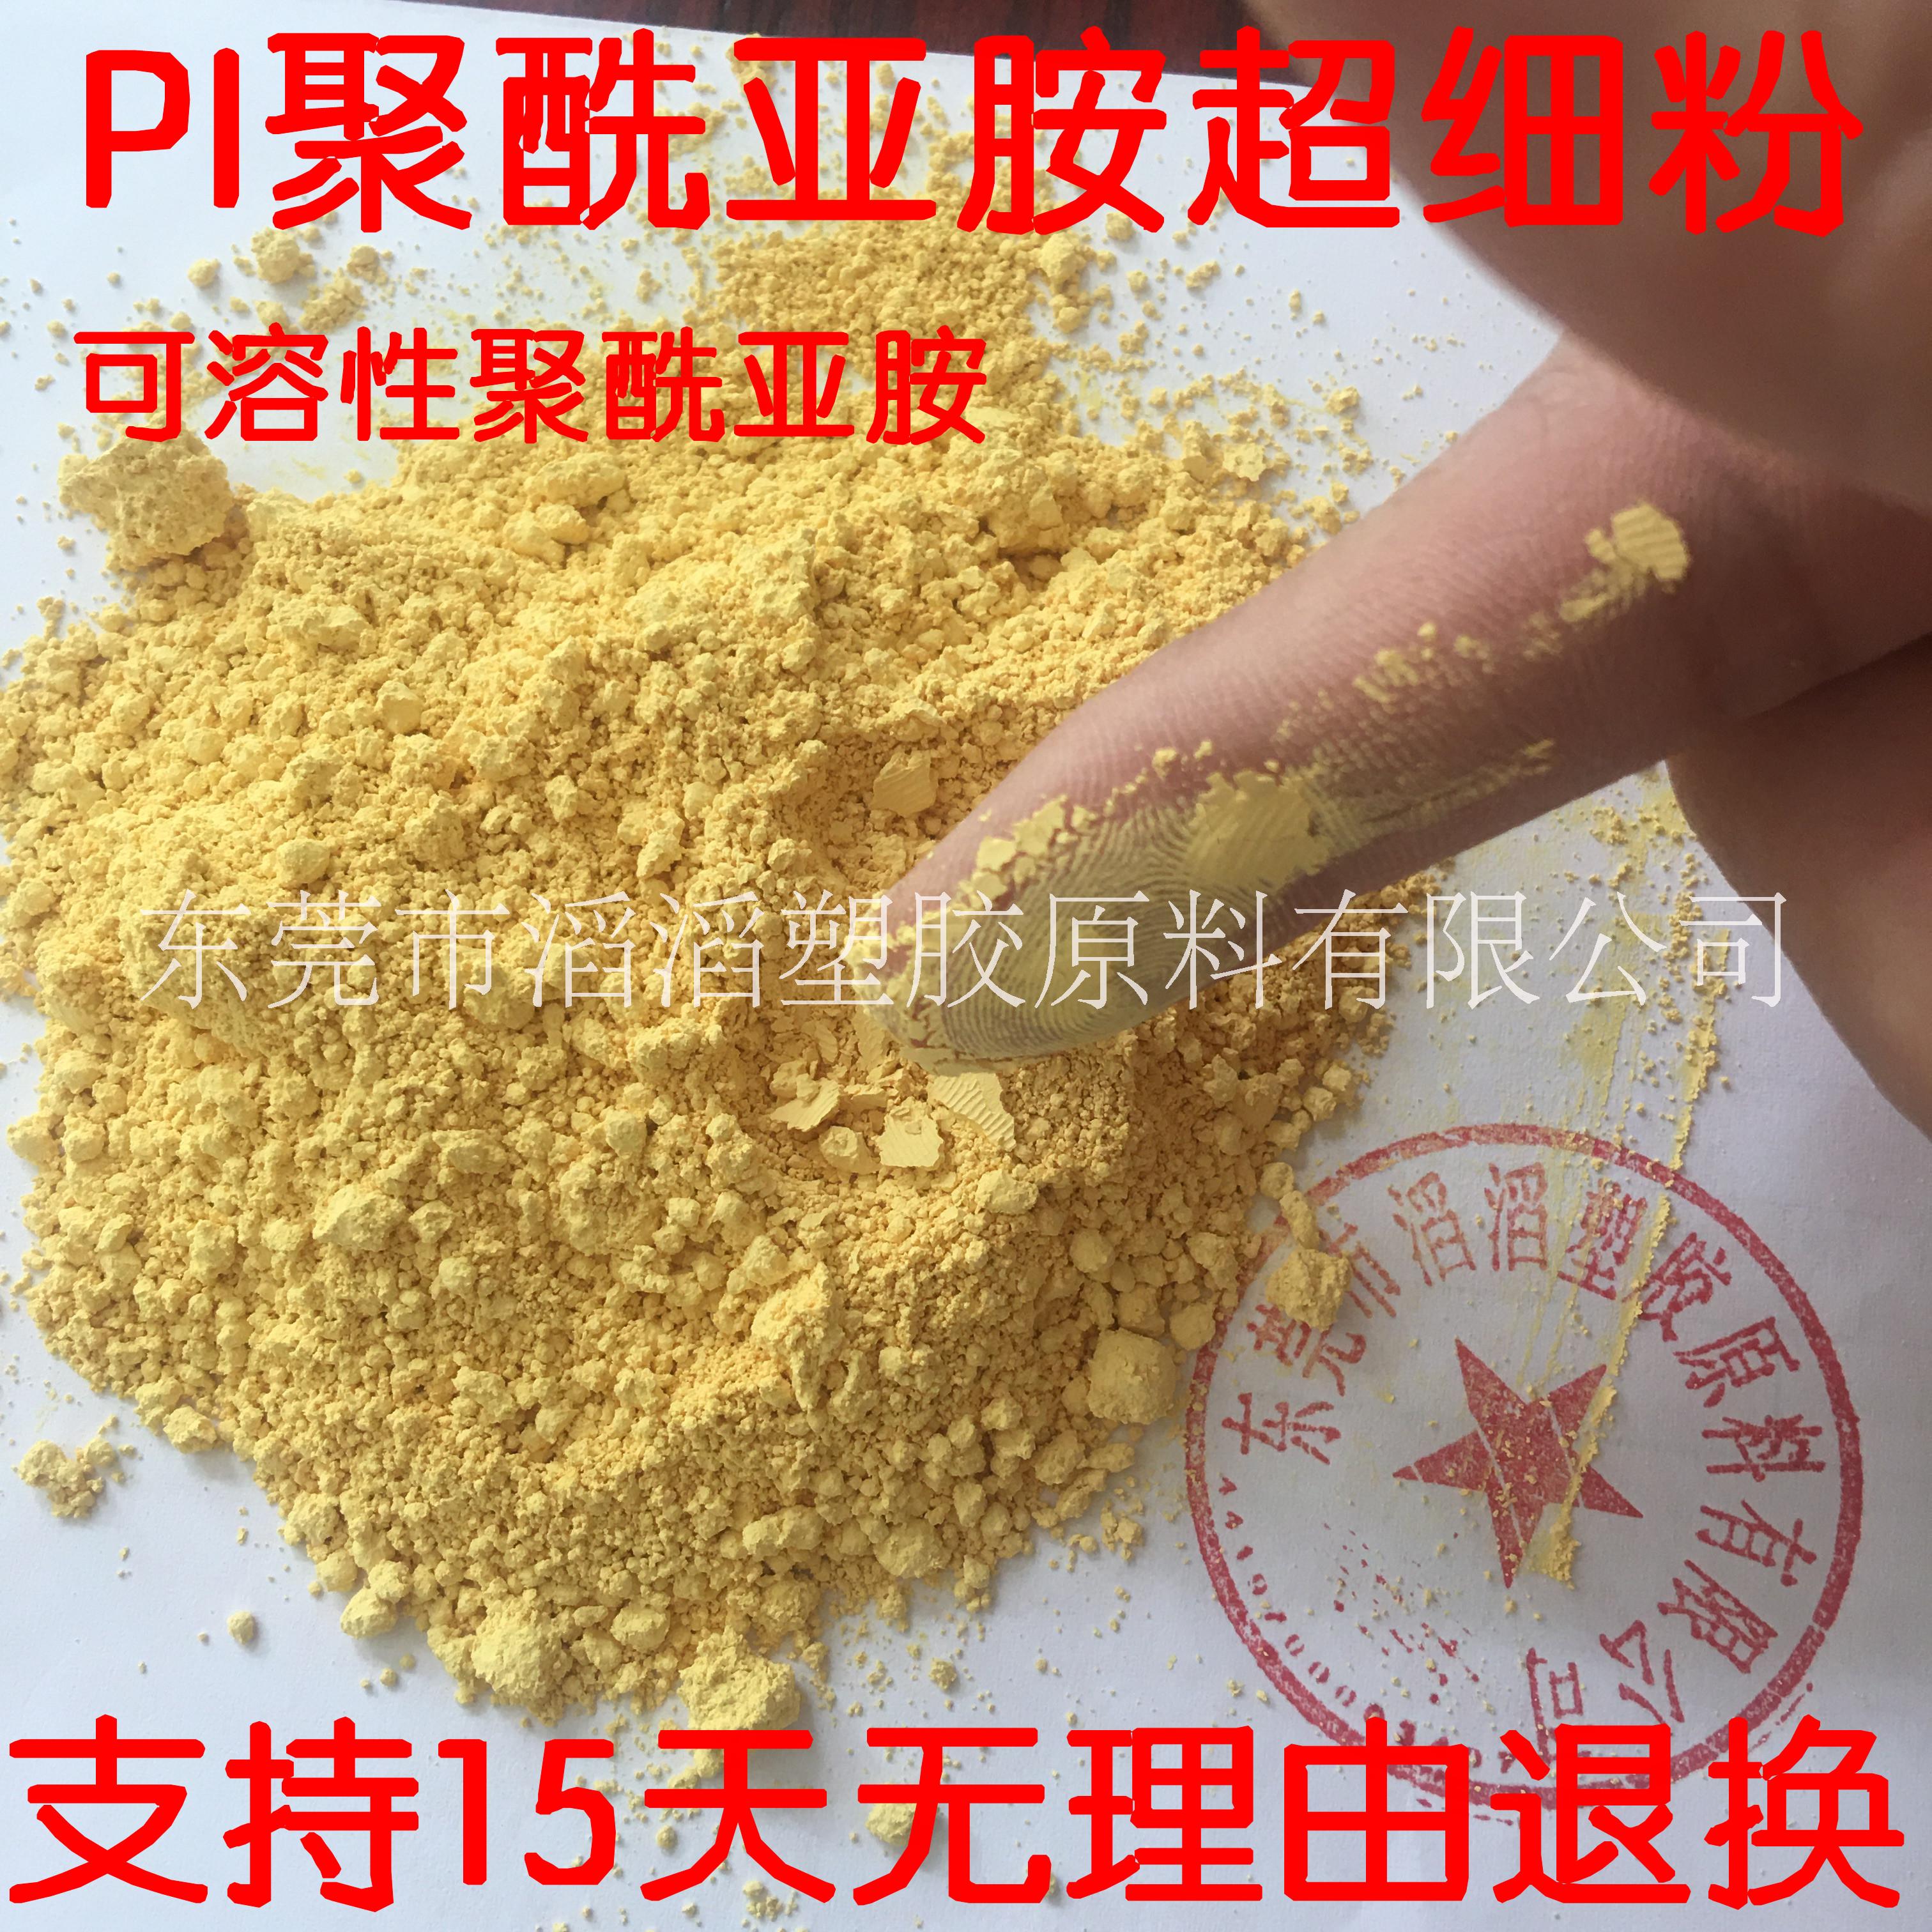 聚酰亚胺粉末 PI聚酰亚胺超细粉末 聚四氟乙烯填充改性用PI粉 PL450C PI树脂粉末